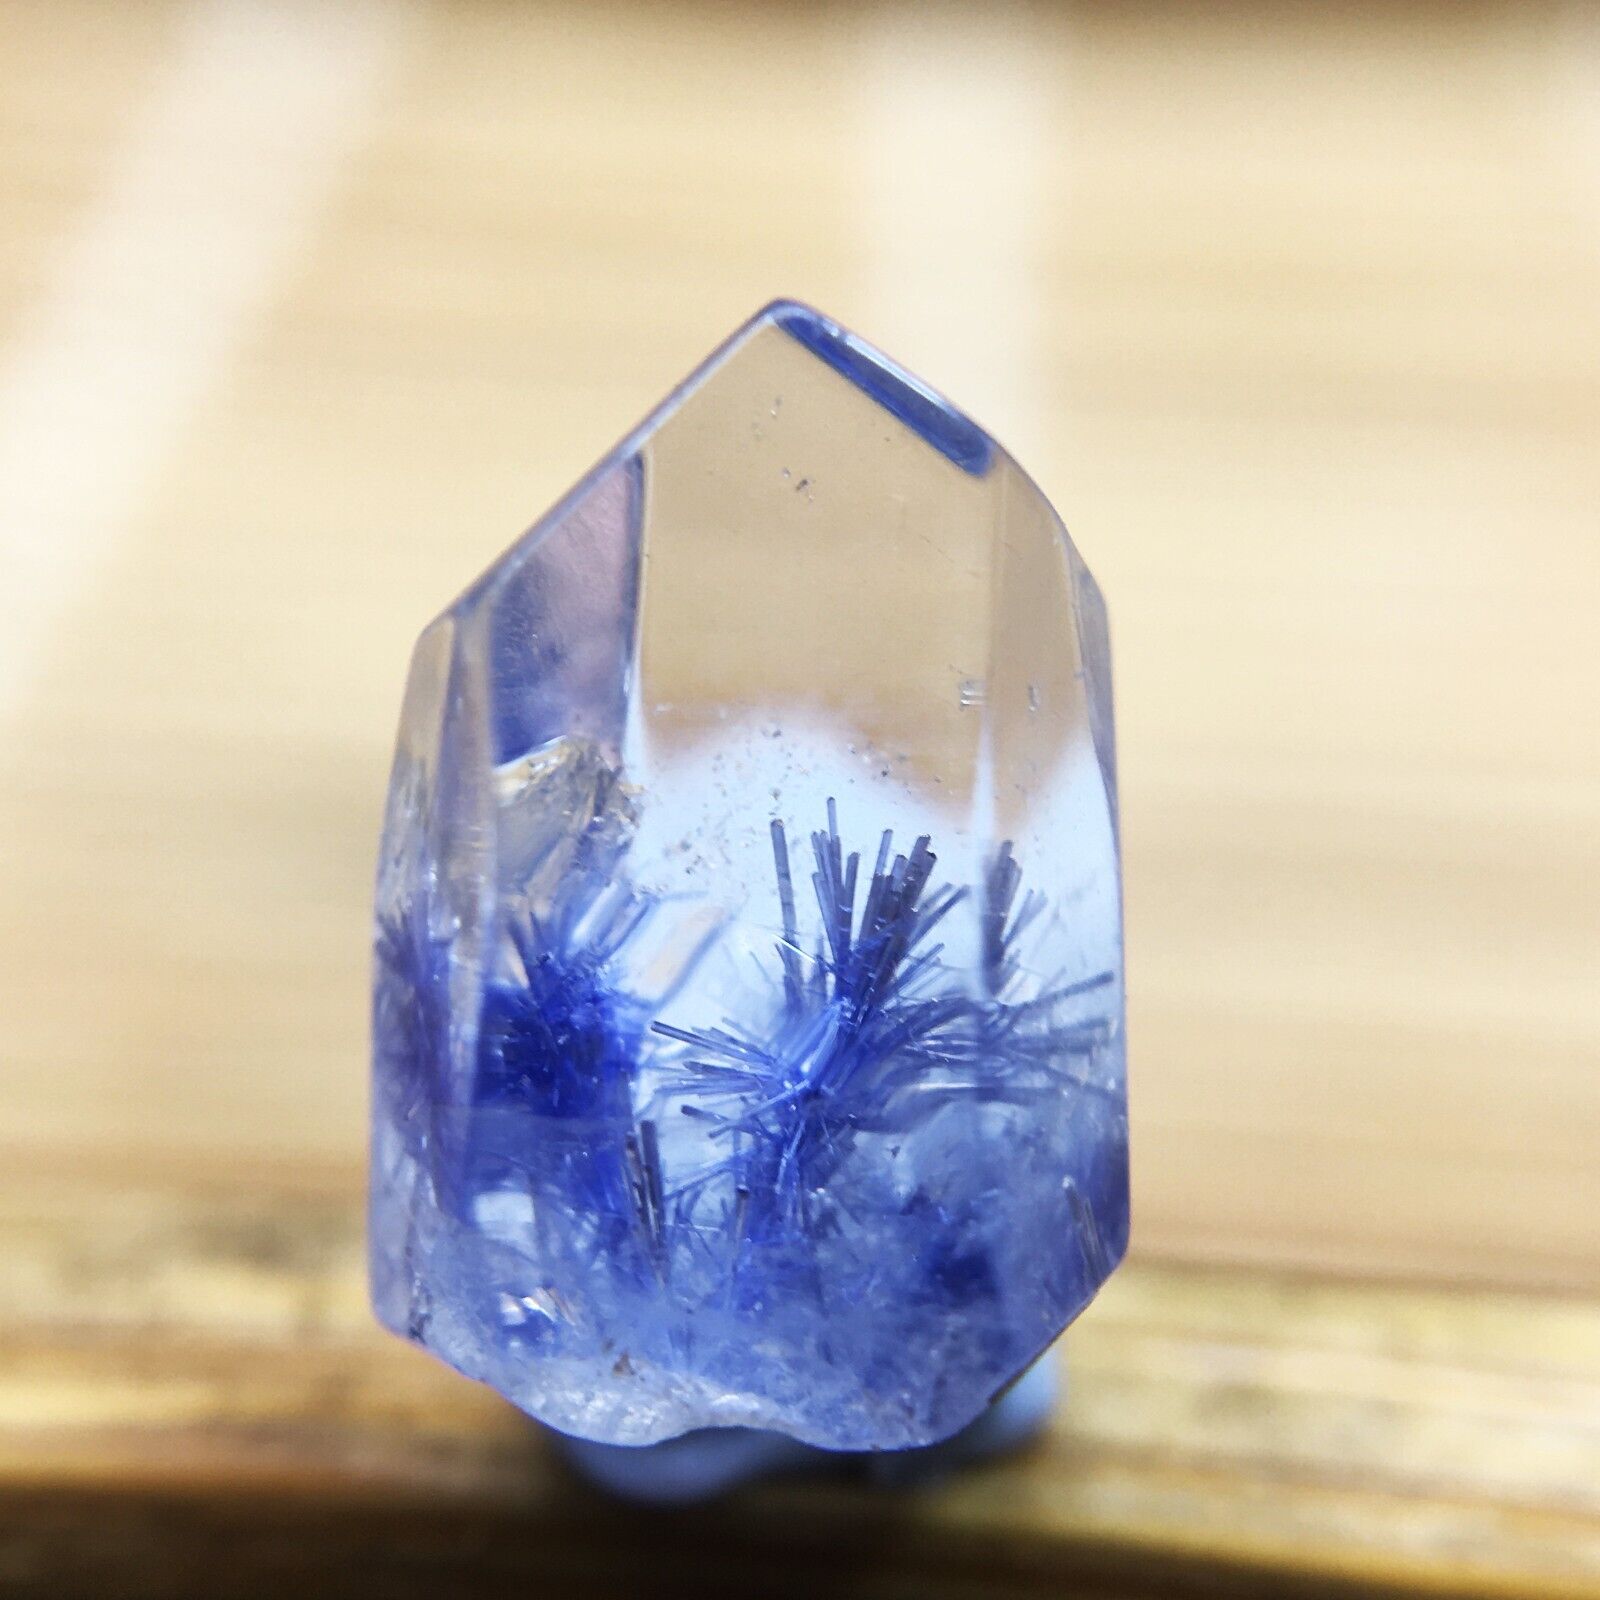 1.9Ct Very Rare NATURAL Beautiful Blue Dumortierite Quartz Crystal Specimen